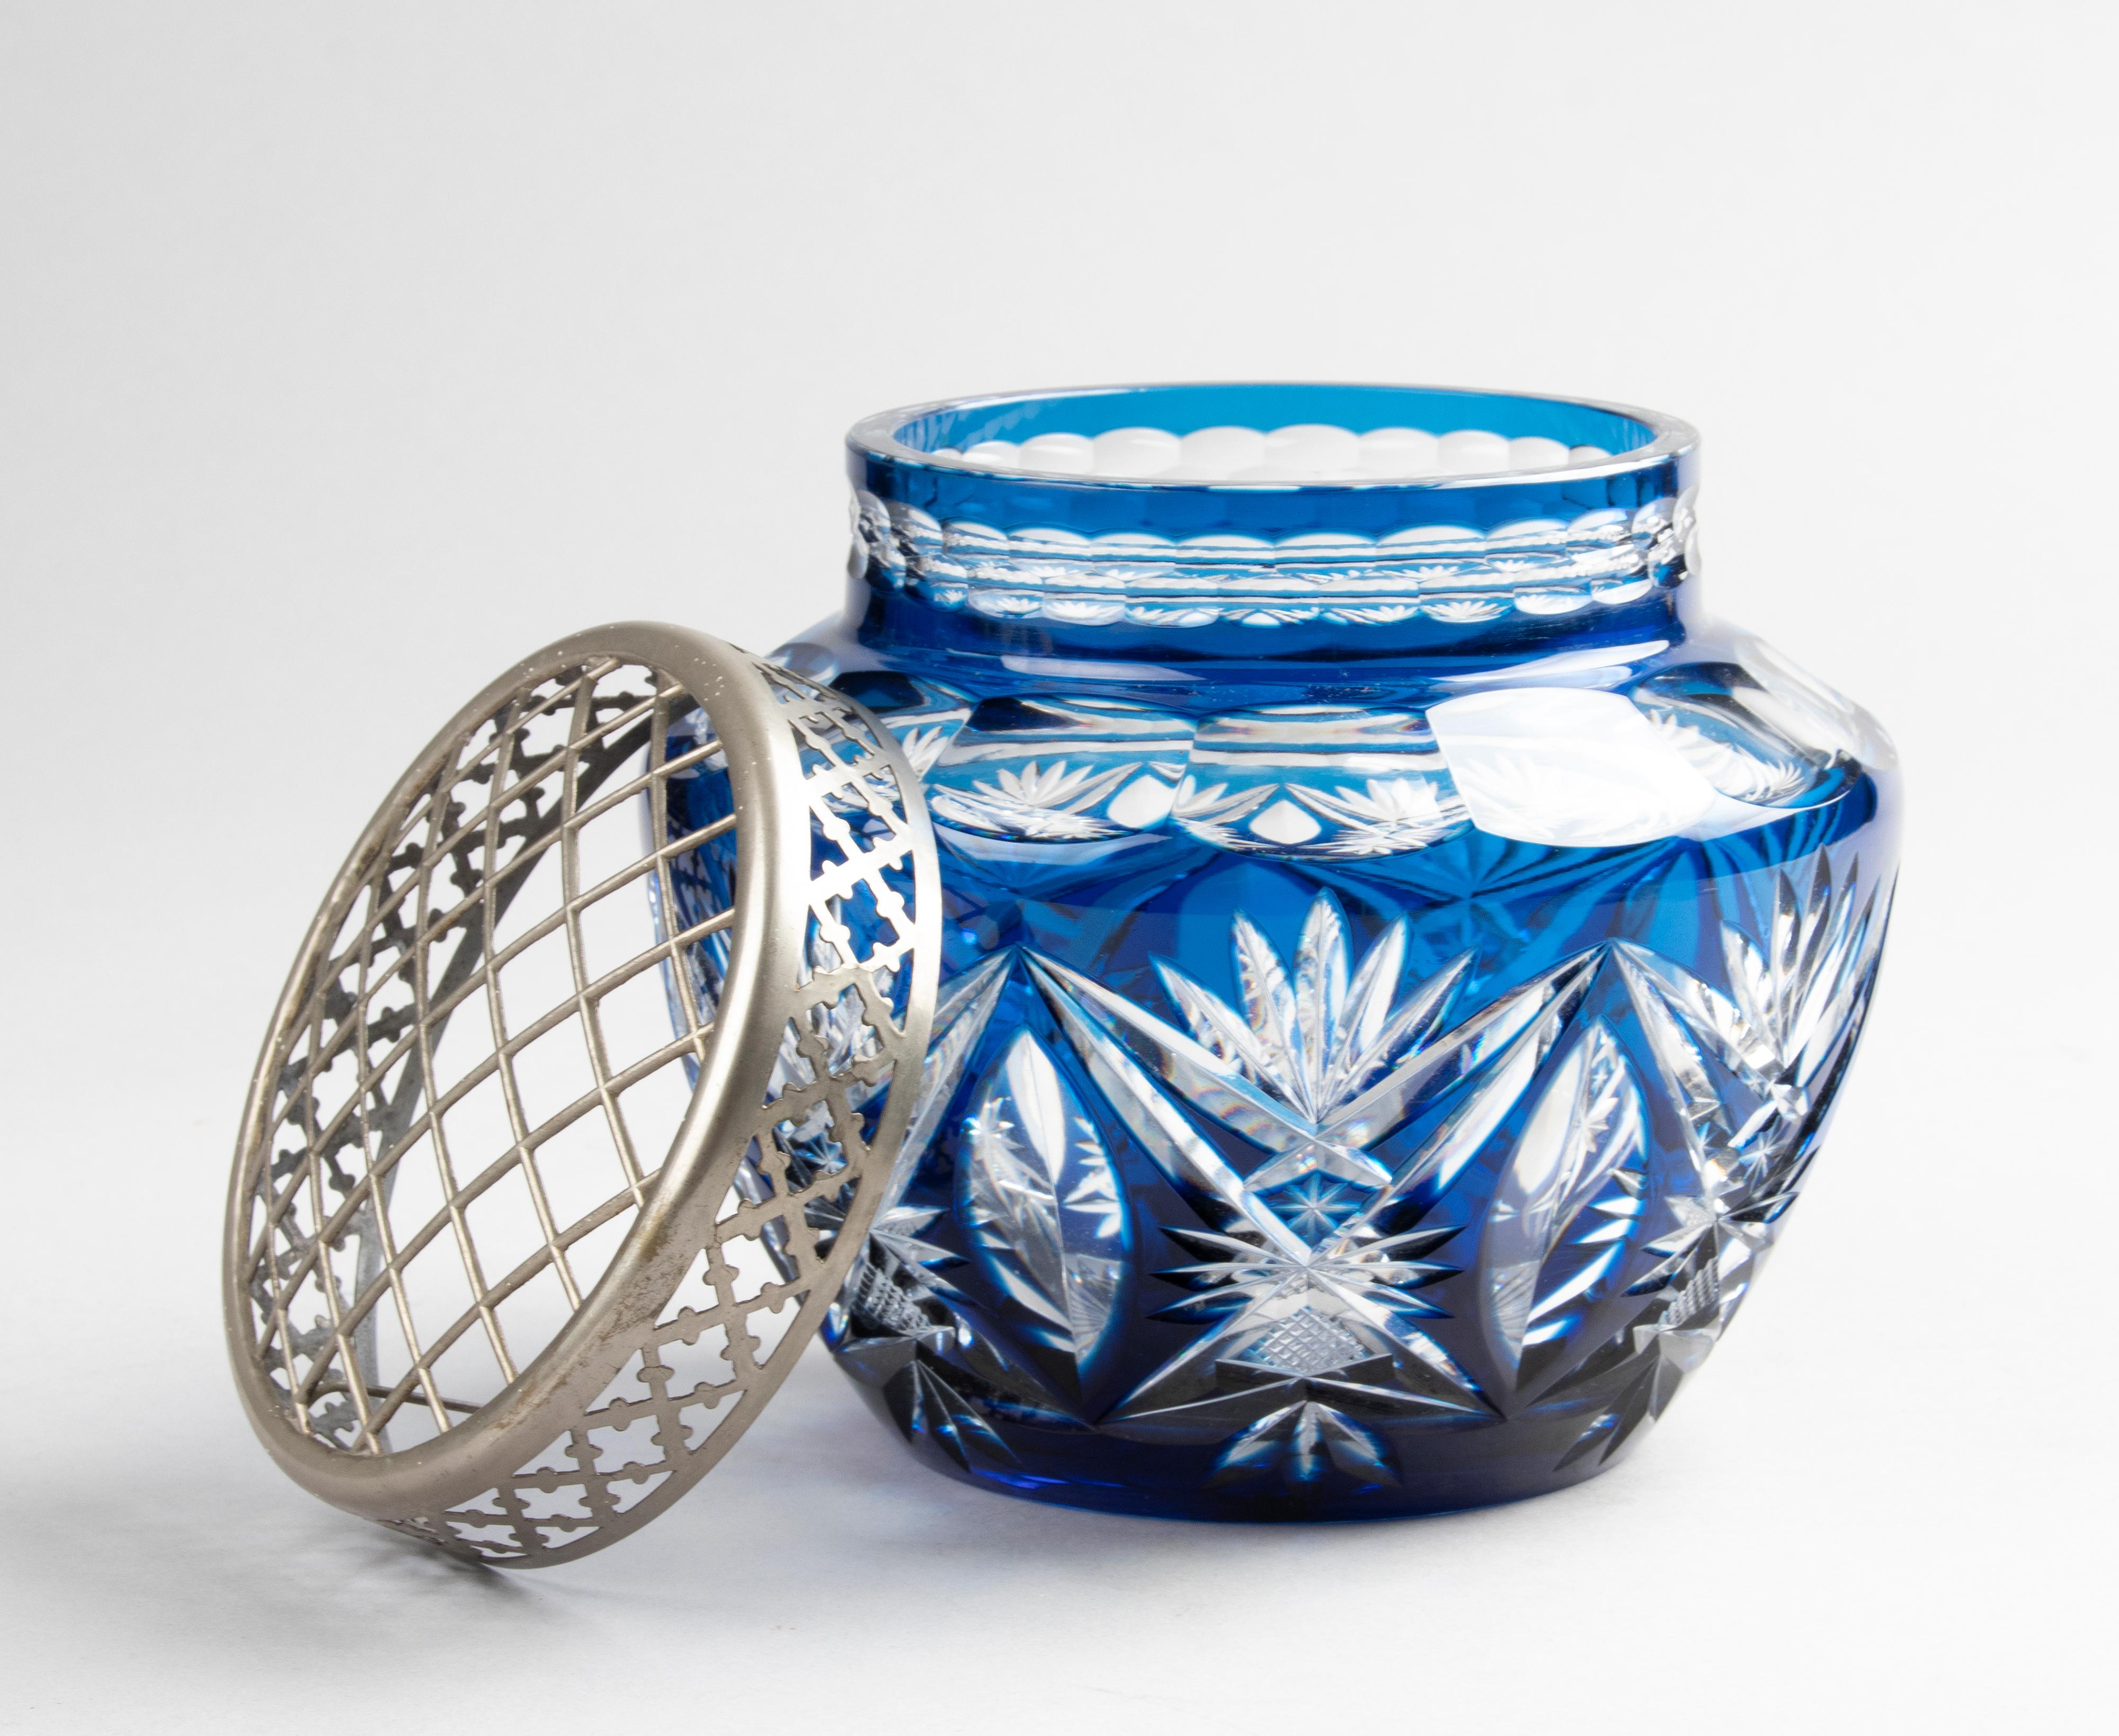 Superbe vase Pick Fleur en cristal du fabricant belge Val Saint Lambert. Couleur bleue claire avec une belle sculpture. Le vase date d'environ 1920-1930. Le vase n'est pas marqué, mais il s'agit d'un modèle bien connu de Val Saint Lambert et les